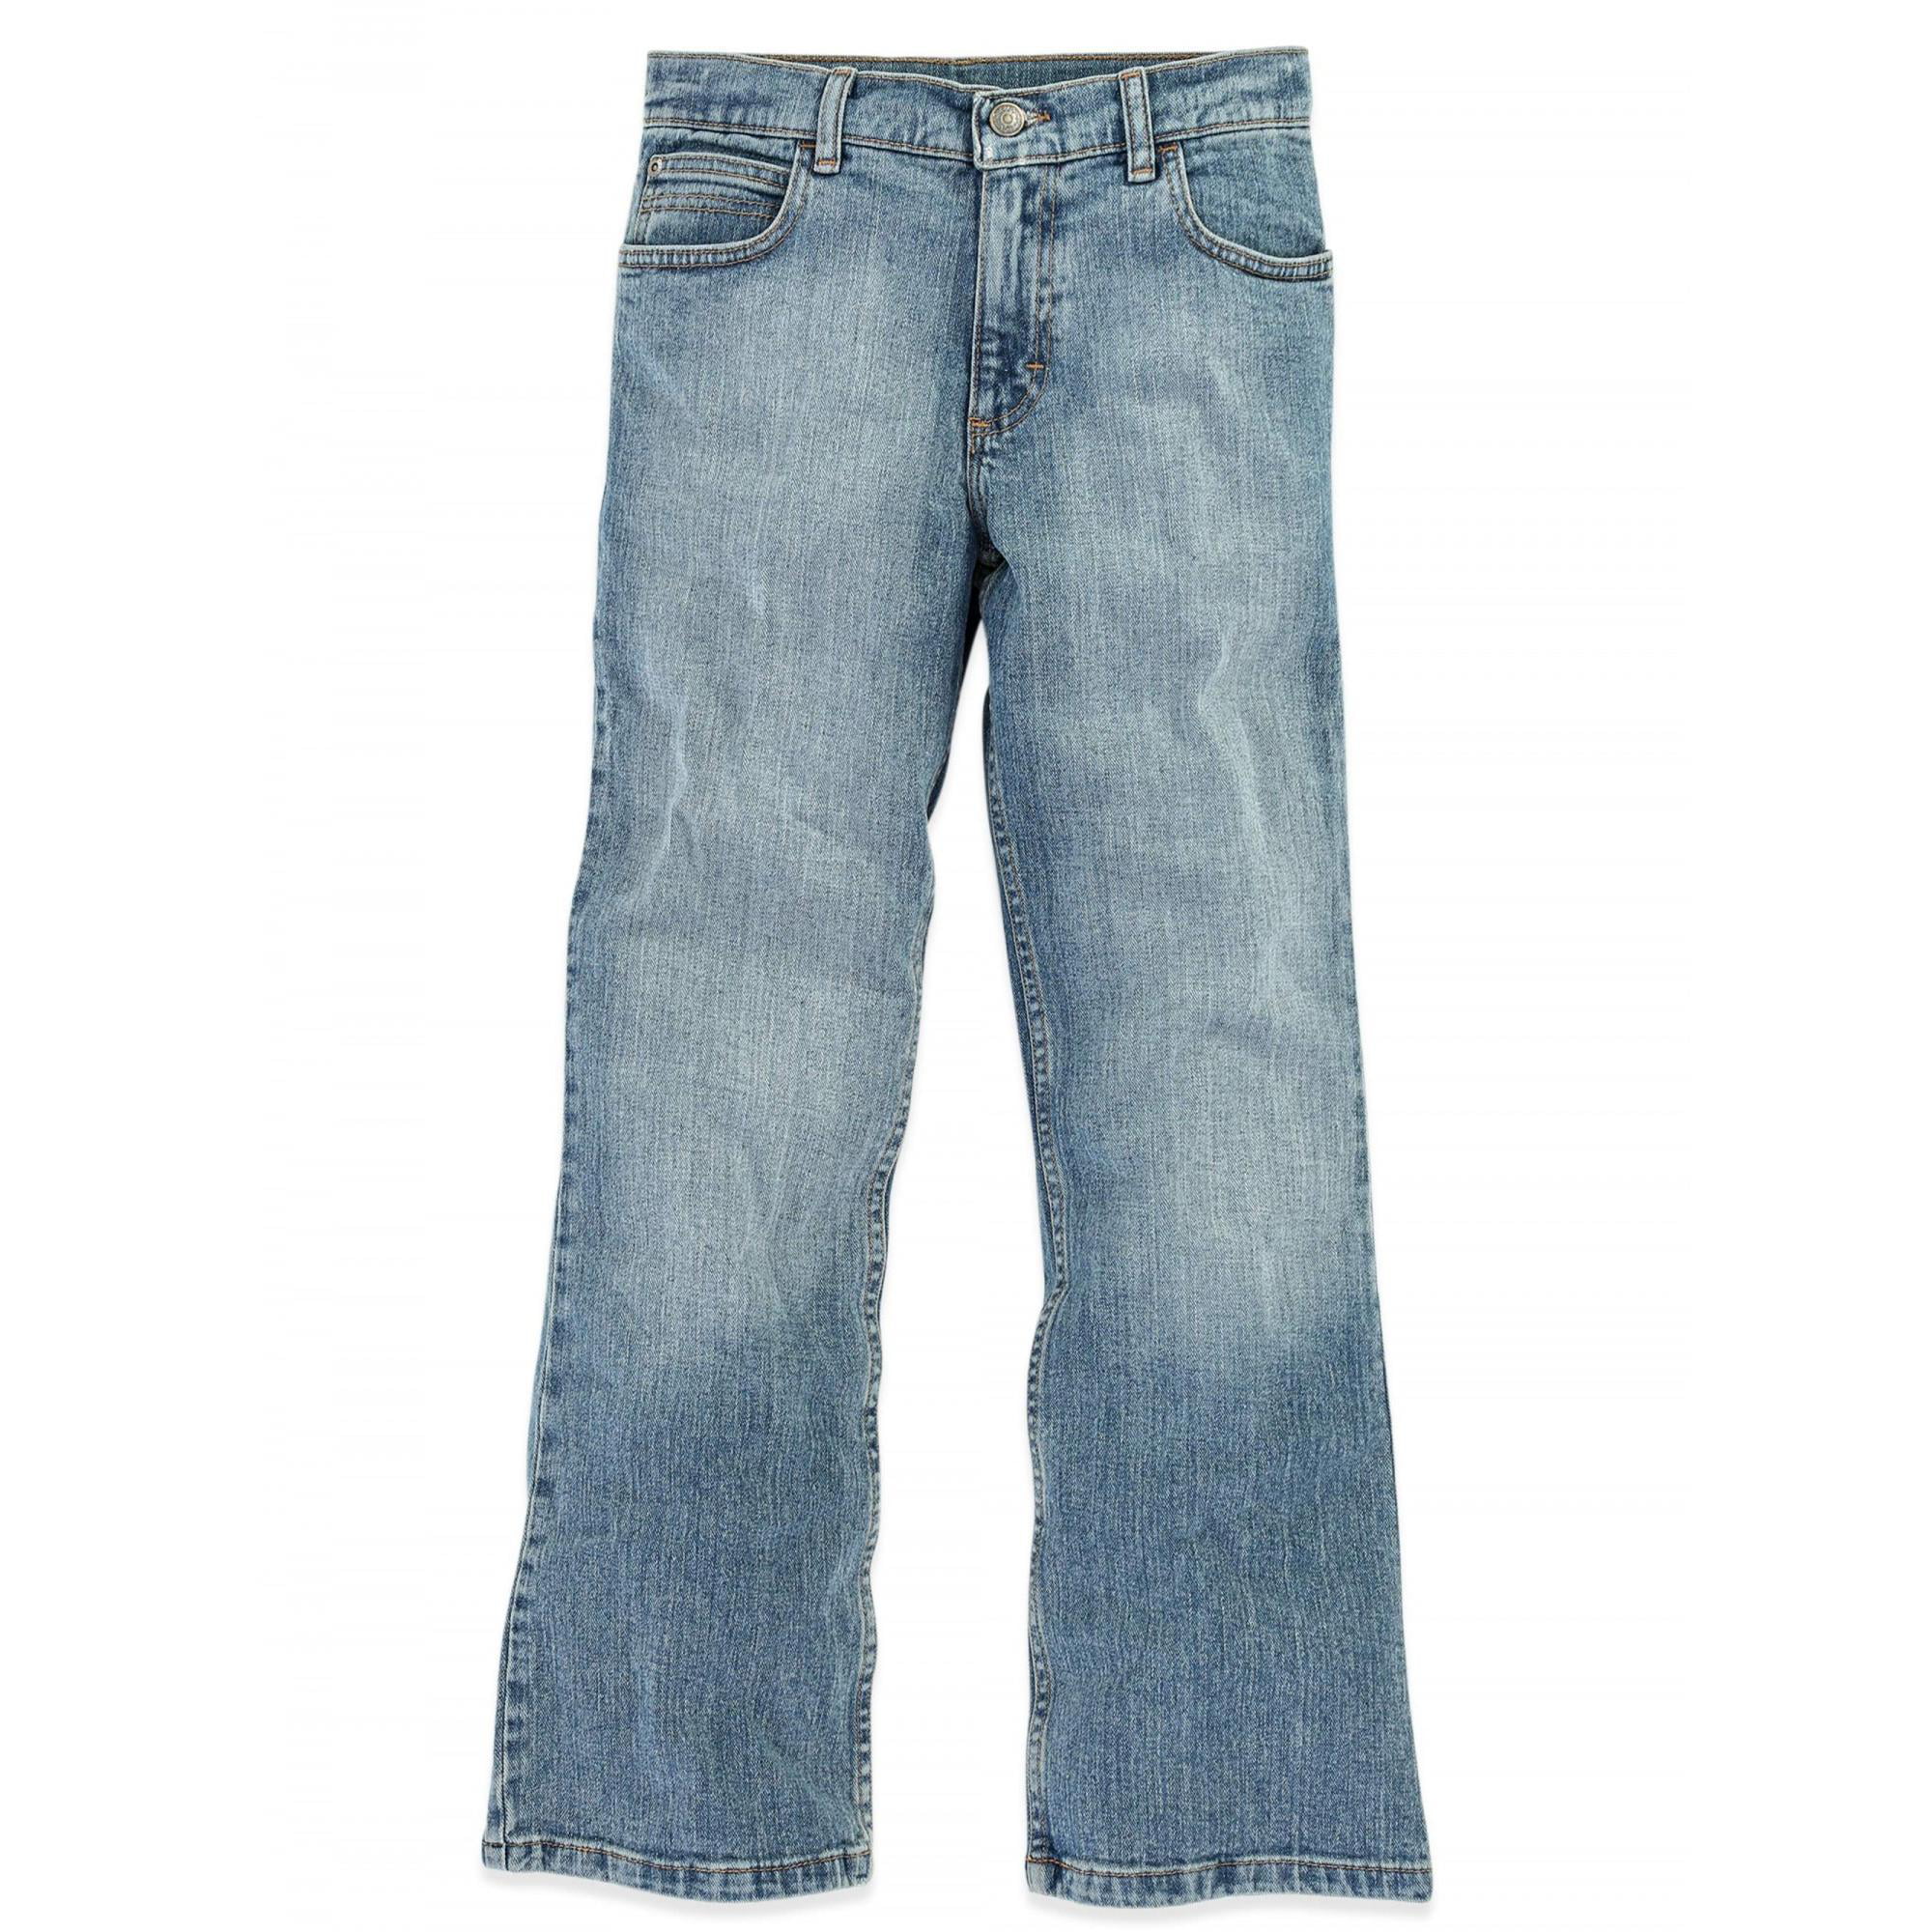 wrangler jeans walmart